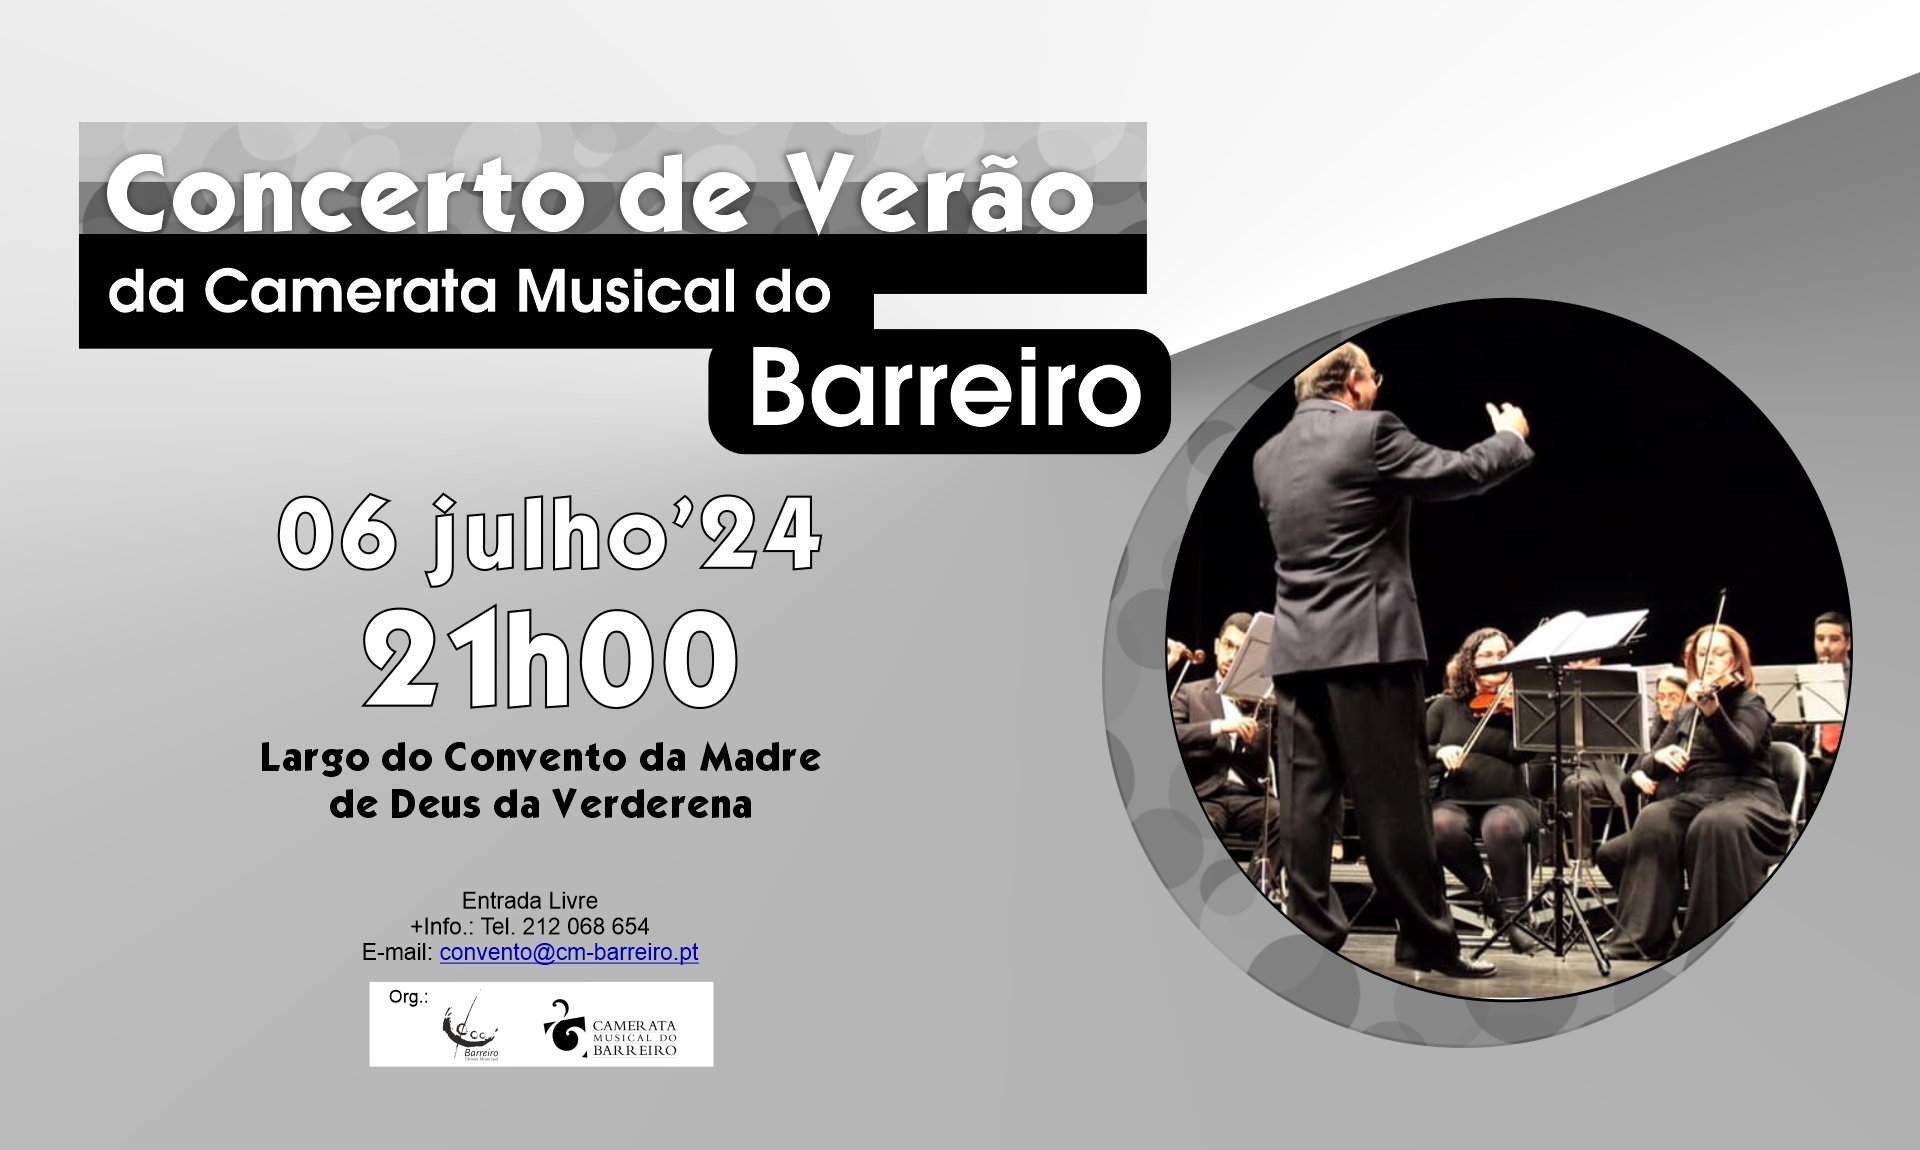 Camerata Musical do Barreiro | Concerto de Verão | 06 julho | Largo do Convento da Verderena